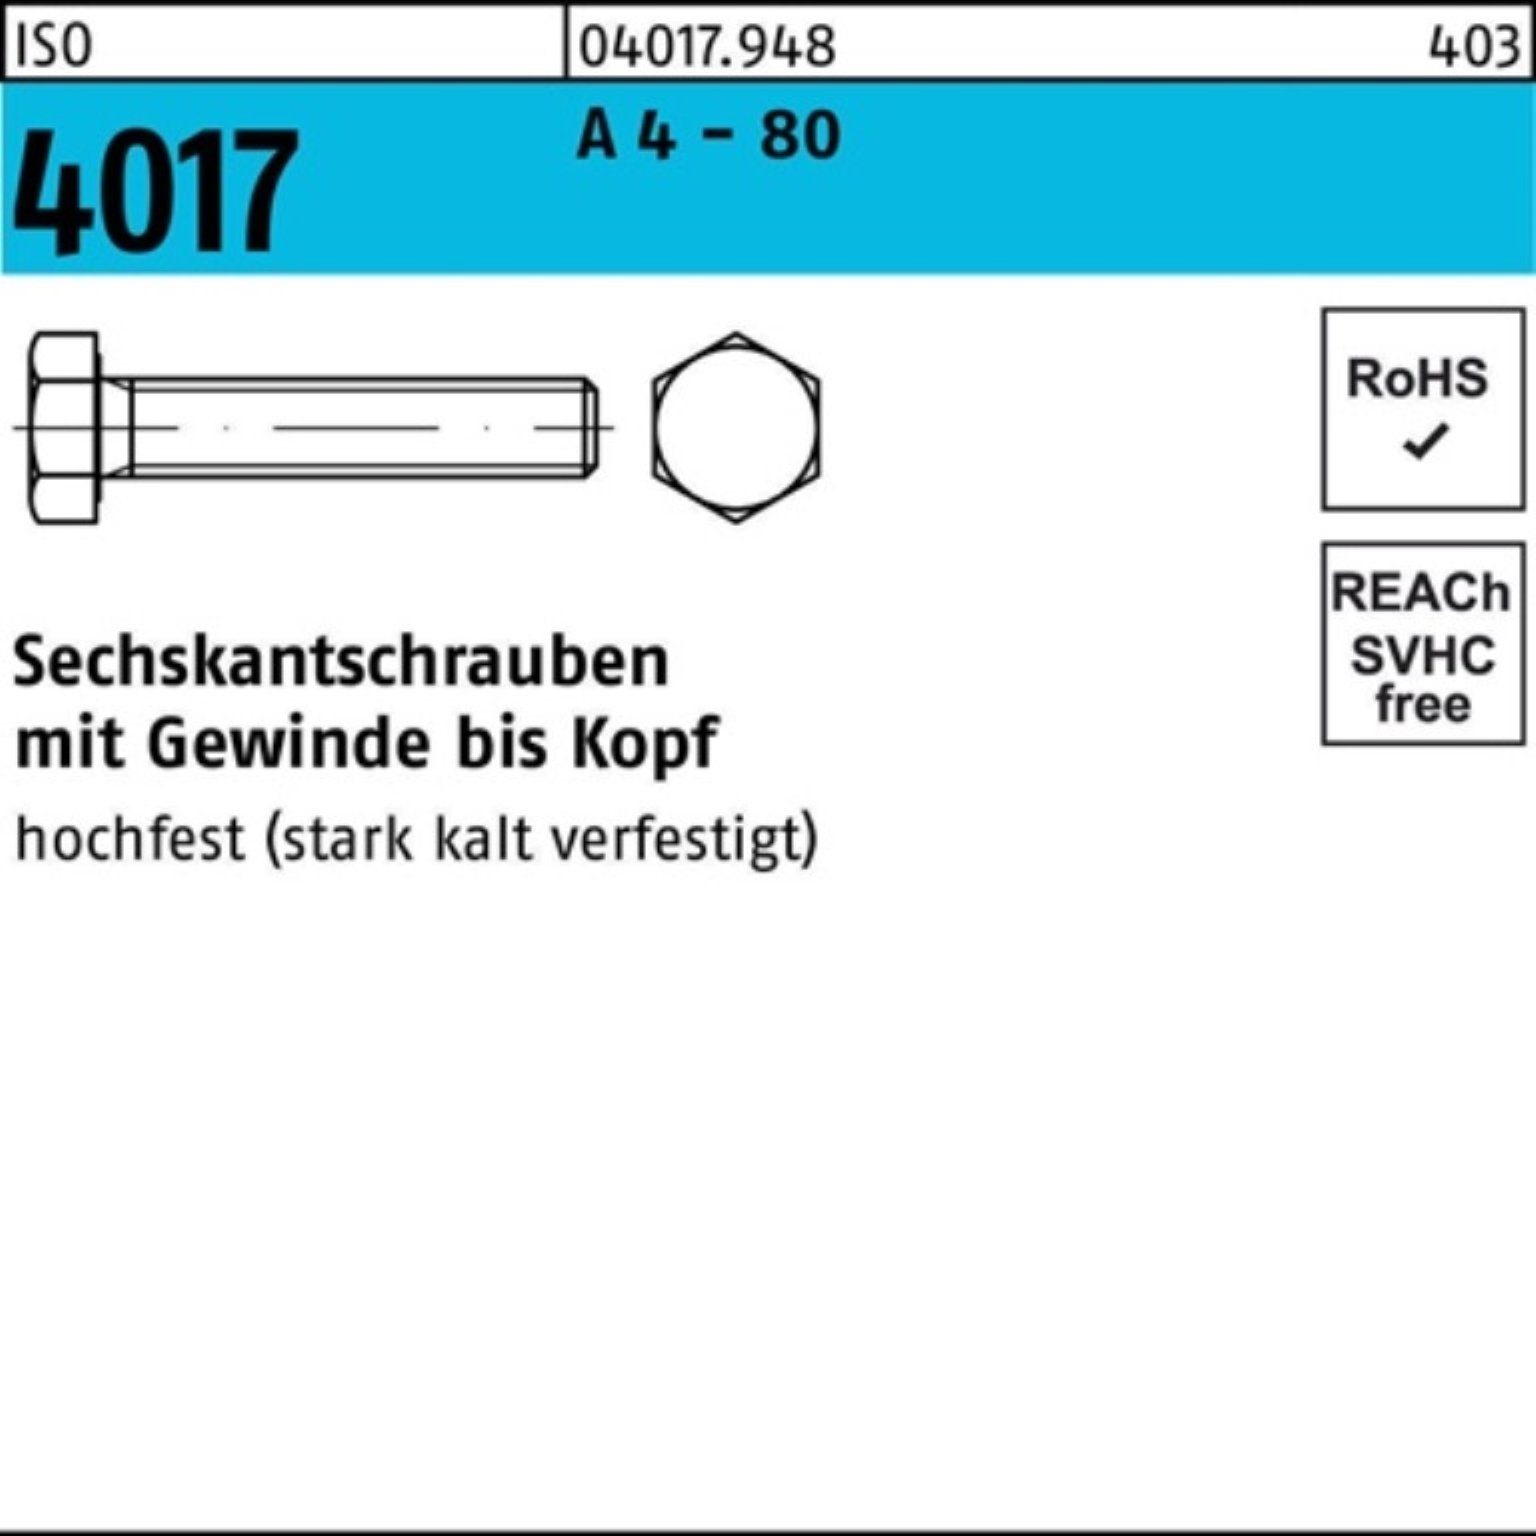 Stück 80 Sechskantschraube Bufab IS A 70 4 4017 ISO VG Pack 100er - 25 M16x Sechskantschraube